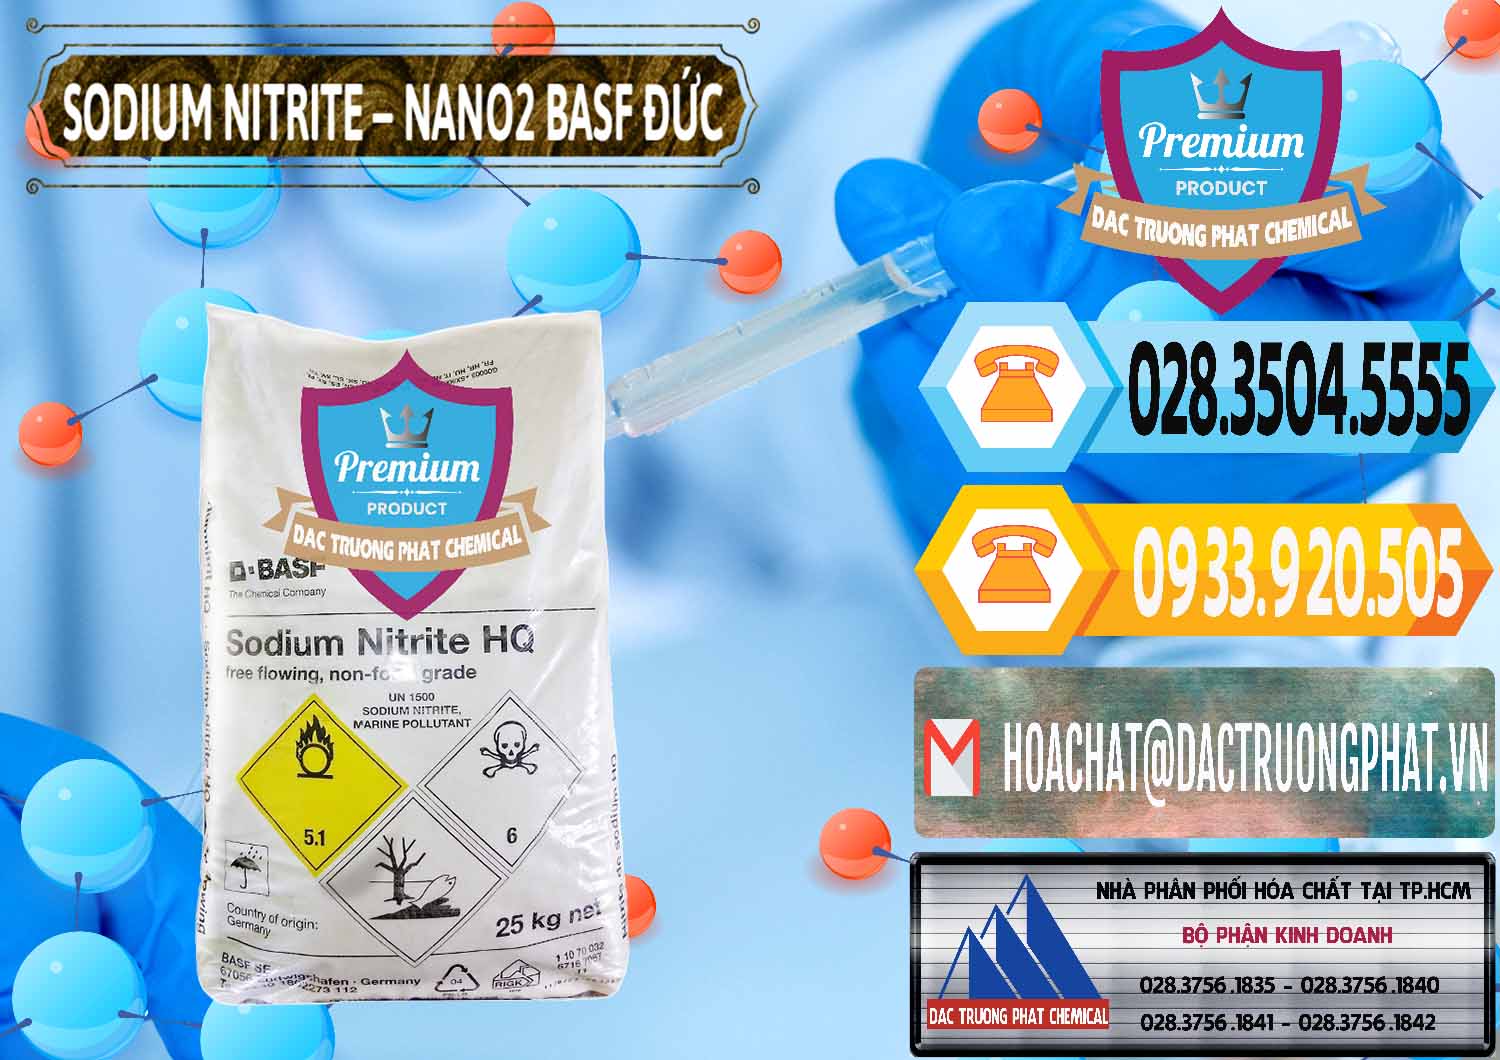 Chuyên bán ( cung cấp ) Sodium Nitrite - NANO2 Đức BASF Germany - 0148 - Nhà nhập khẩu ( cung cấp ) hóa chất tại TP.HCM - hoachattayrua.net